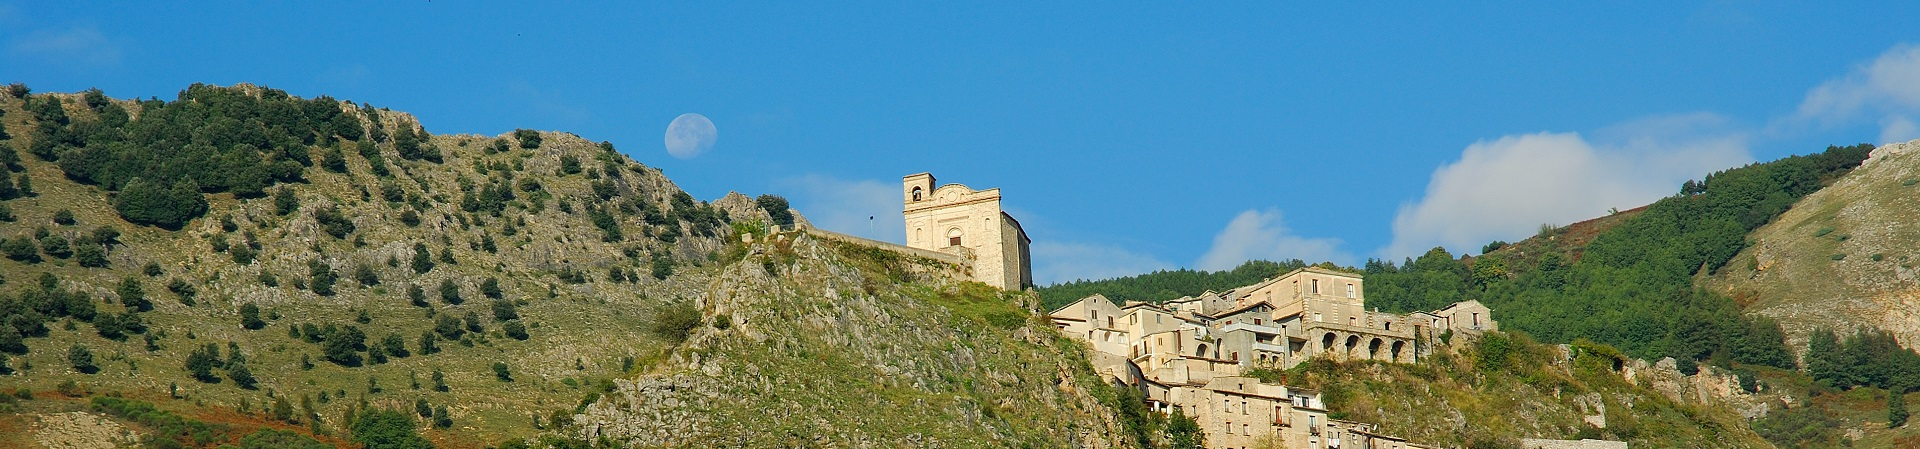 San Donato di Ninea